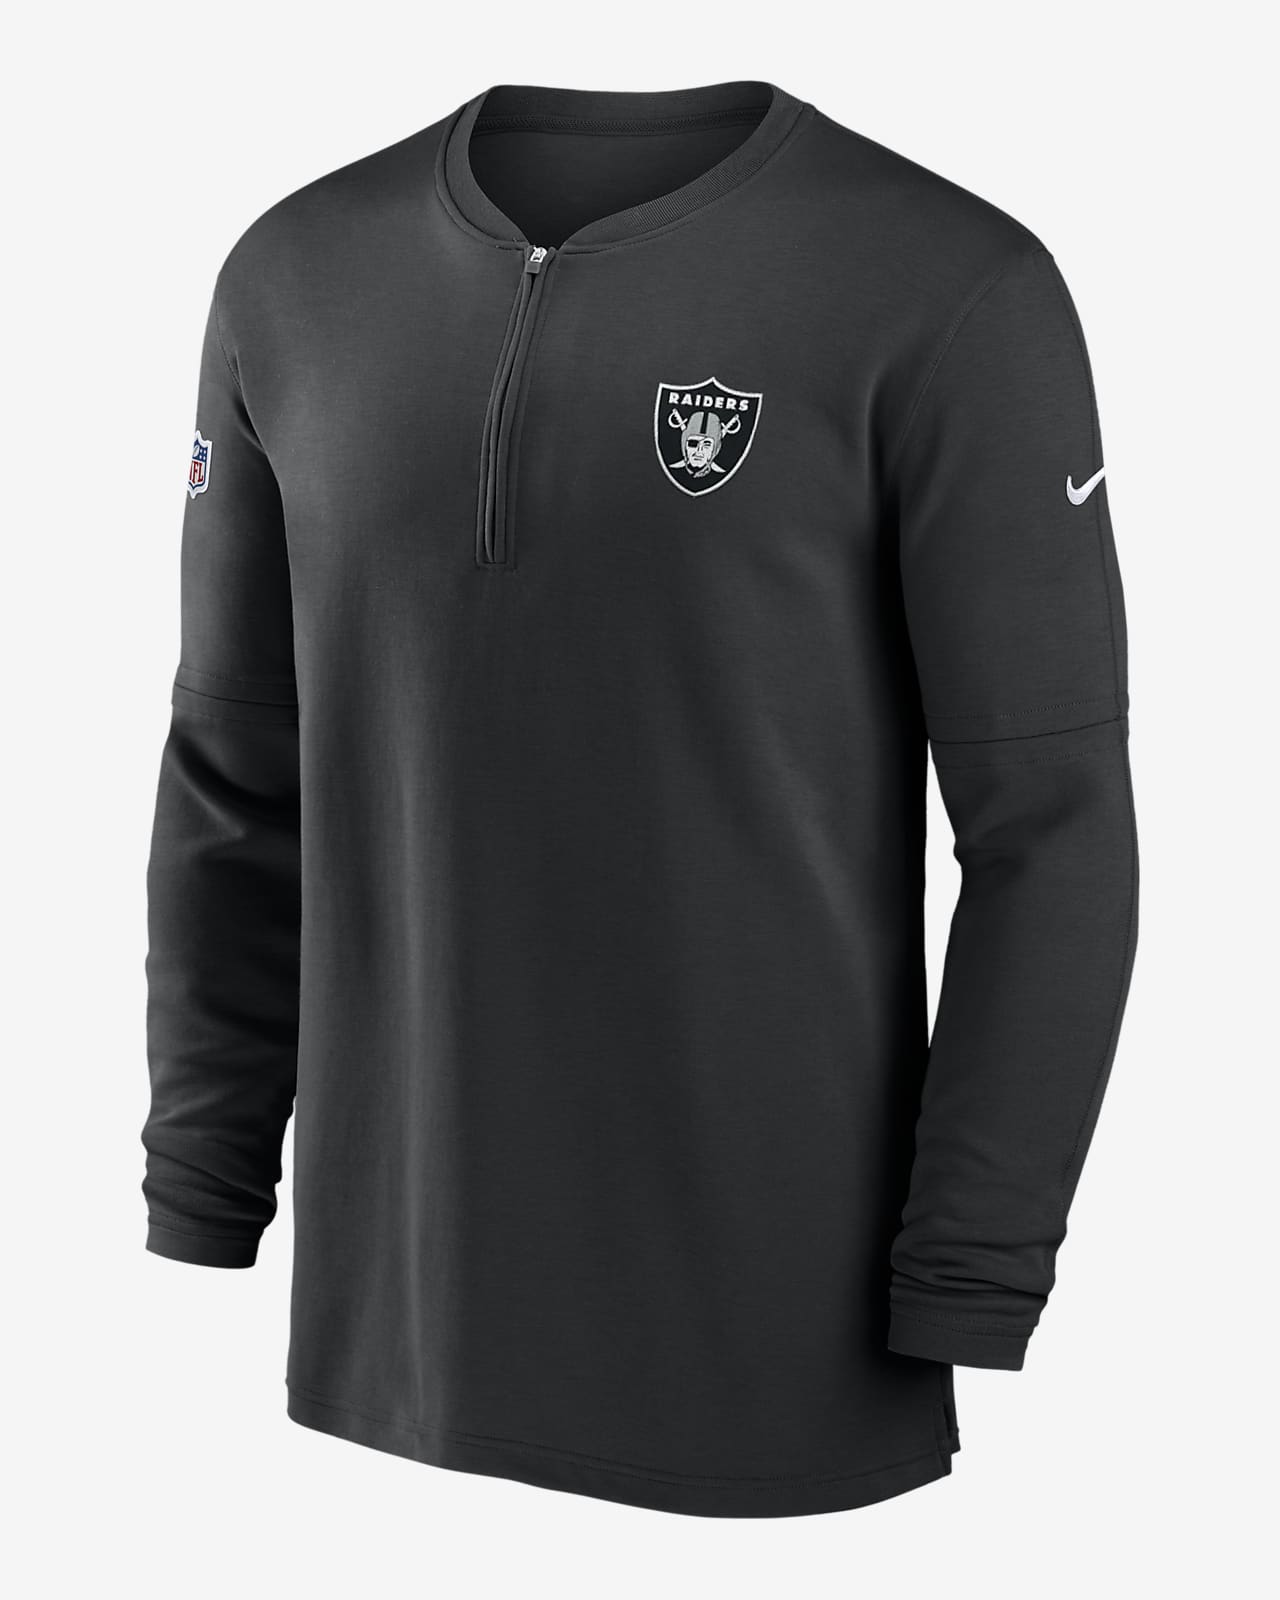 Las Vegas Raiders Sideline Men’s Nike Dri-FIT NFL 1/2-Zip Long-Sleeve Top